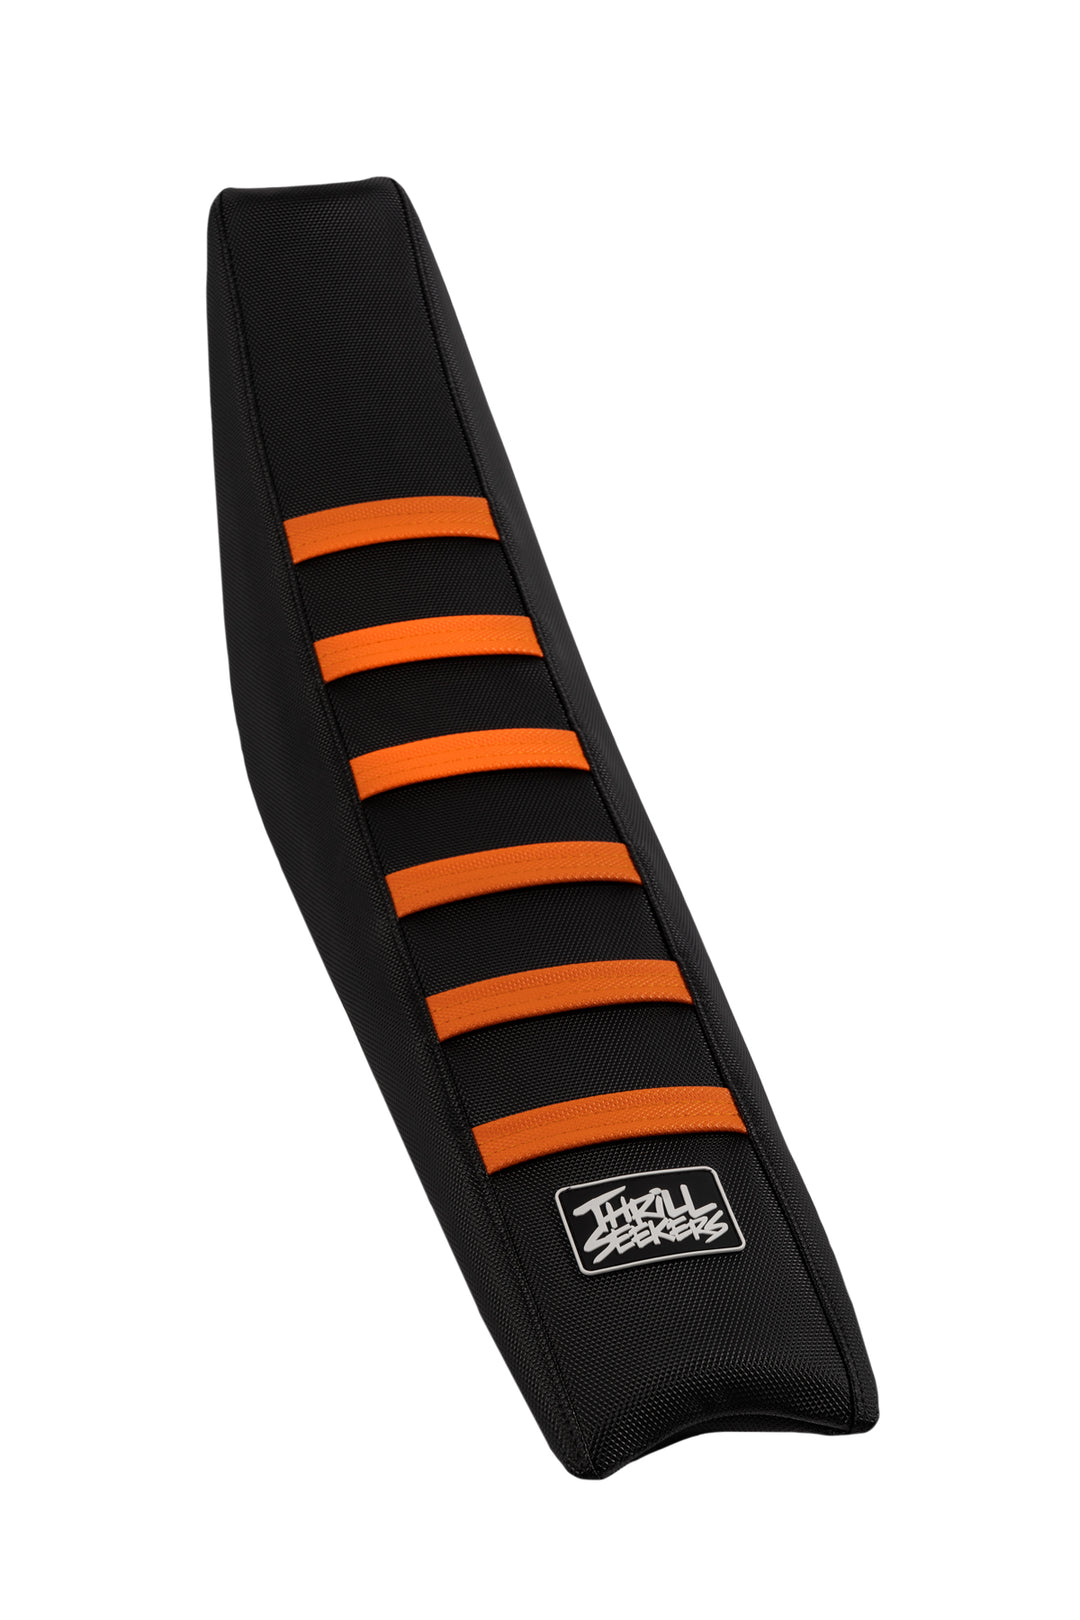 KTM Custom '16-'23 50 SX / SX-E 5 Colors - Black Sides / Black Top / Orange Ribs